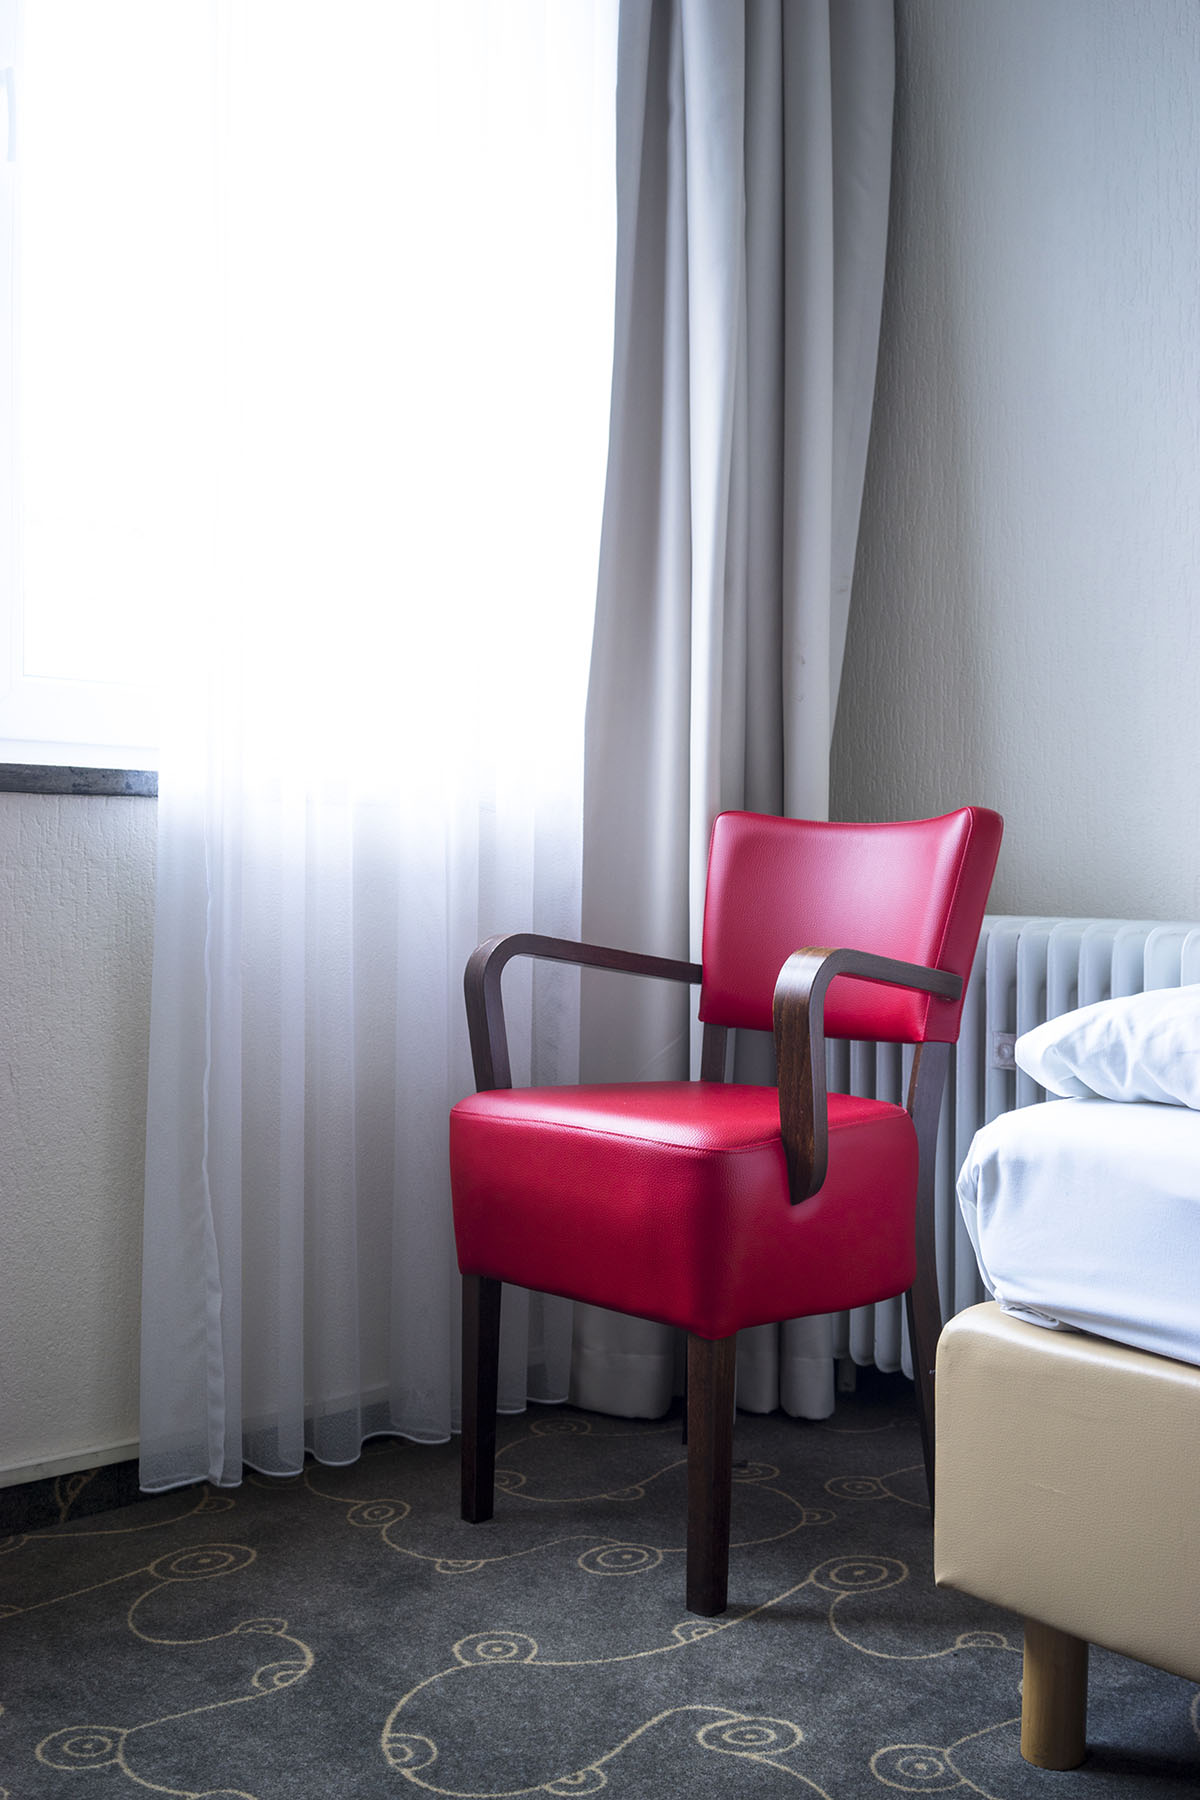 Fotografie | Reportage | inszenierte Dokumentation | hier ein roter Sessel in der Einrichtung eines Hotelzimmers | Fotograf Christian O. Bruch | Corporate Experten Foto + Video - EXPOSE Düsseldorf Hamburg Berlin